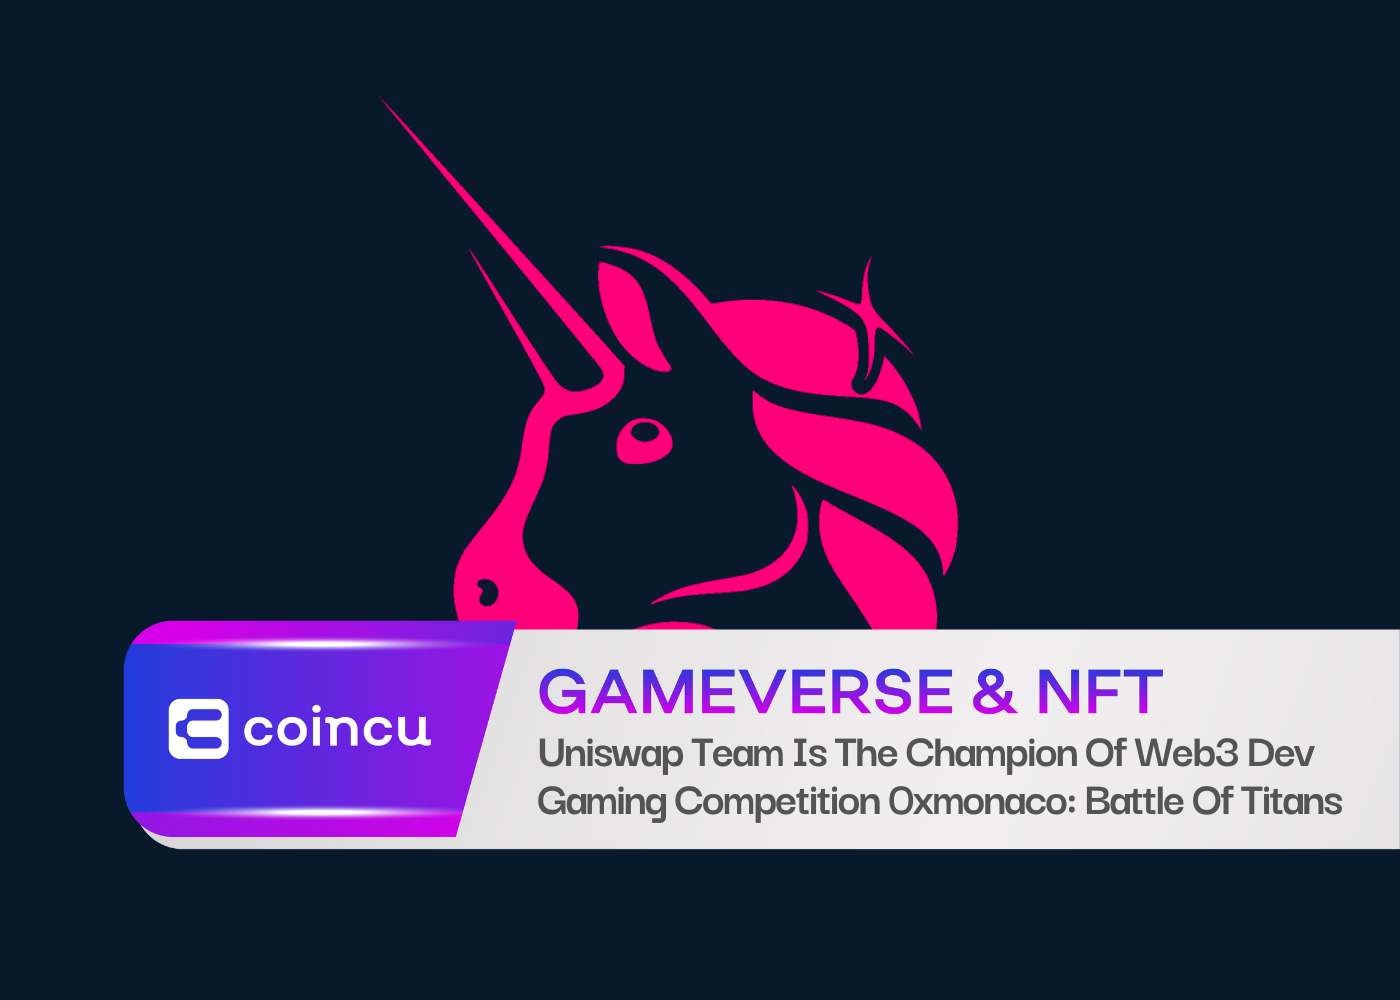 Uniswap टीम Web3 Dev गेमिंग प्रतियोगिता 0xmonaco: बैटल ऑफ़ टाइटन्स की चैंपियन है